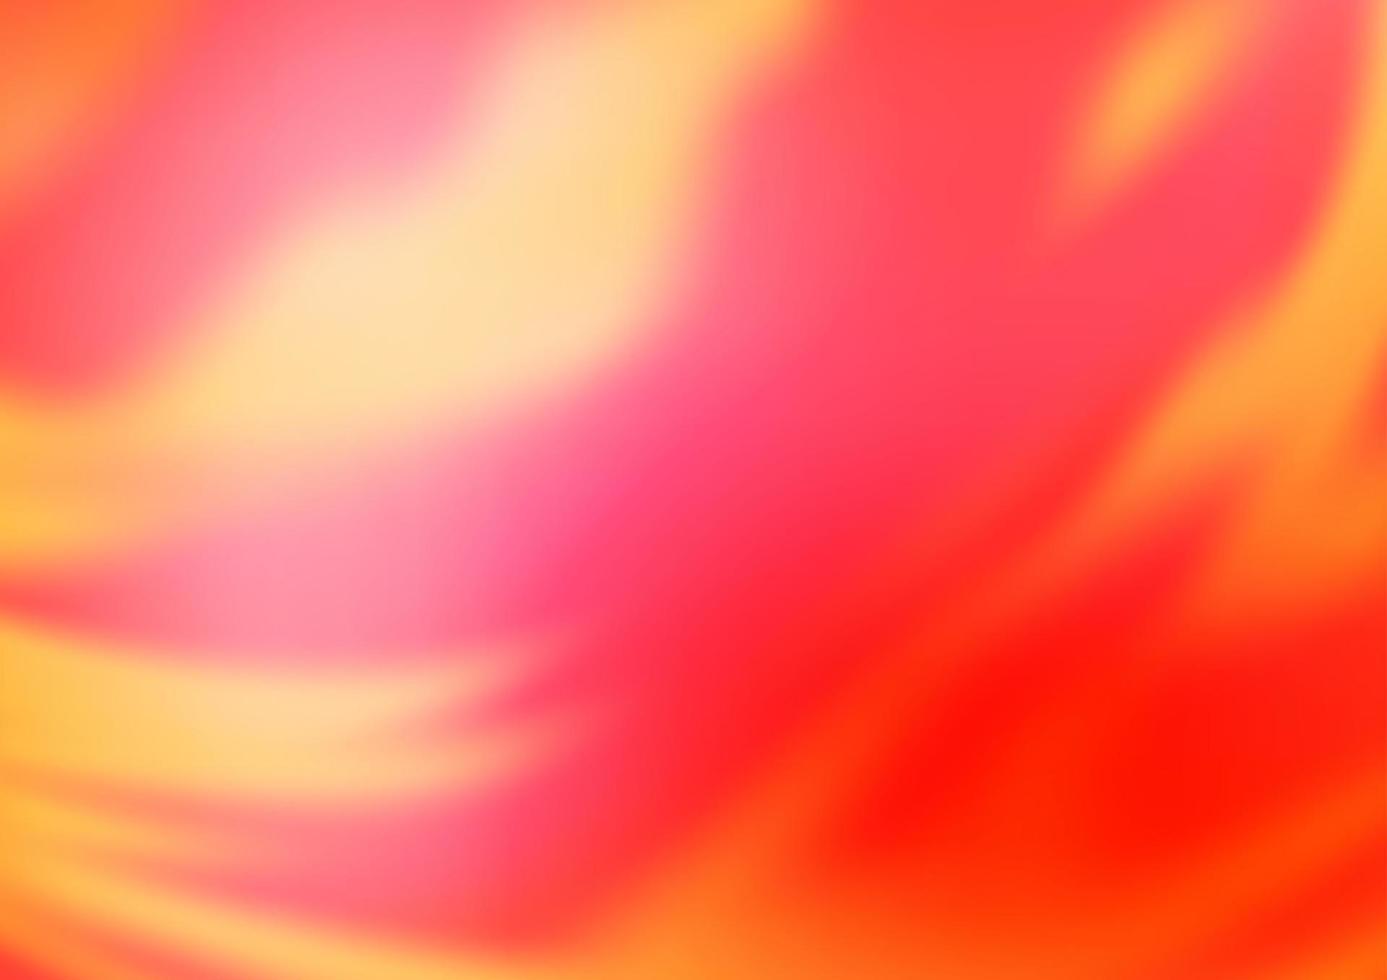 patrón borroso abstracto del vector rojo claro.